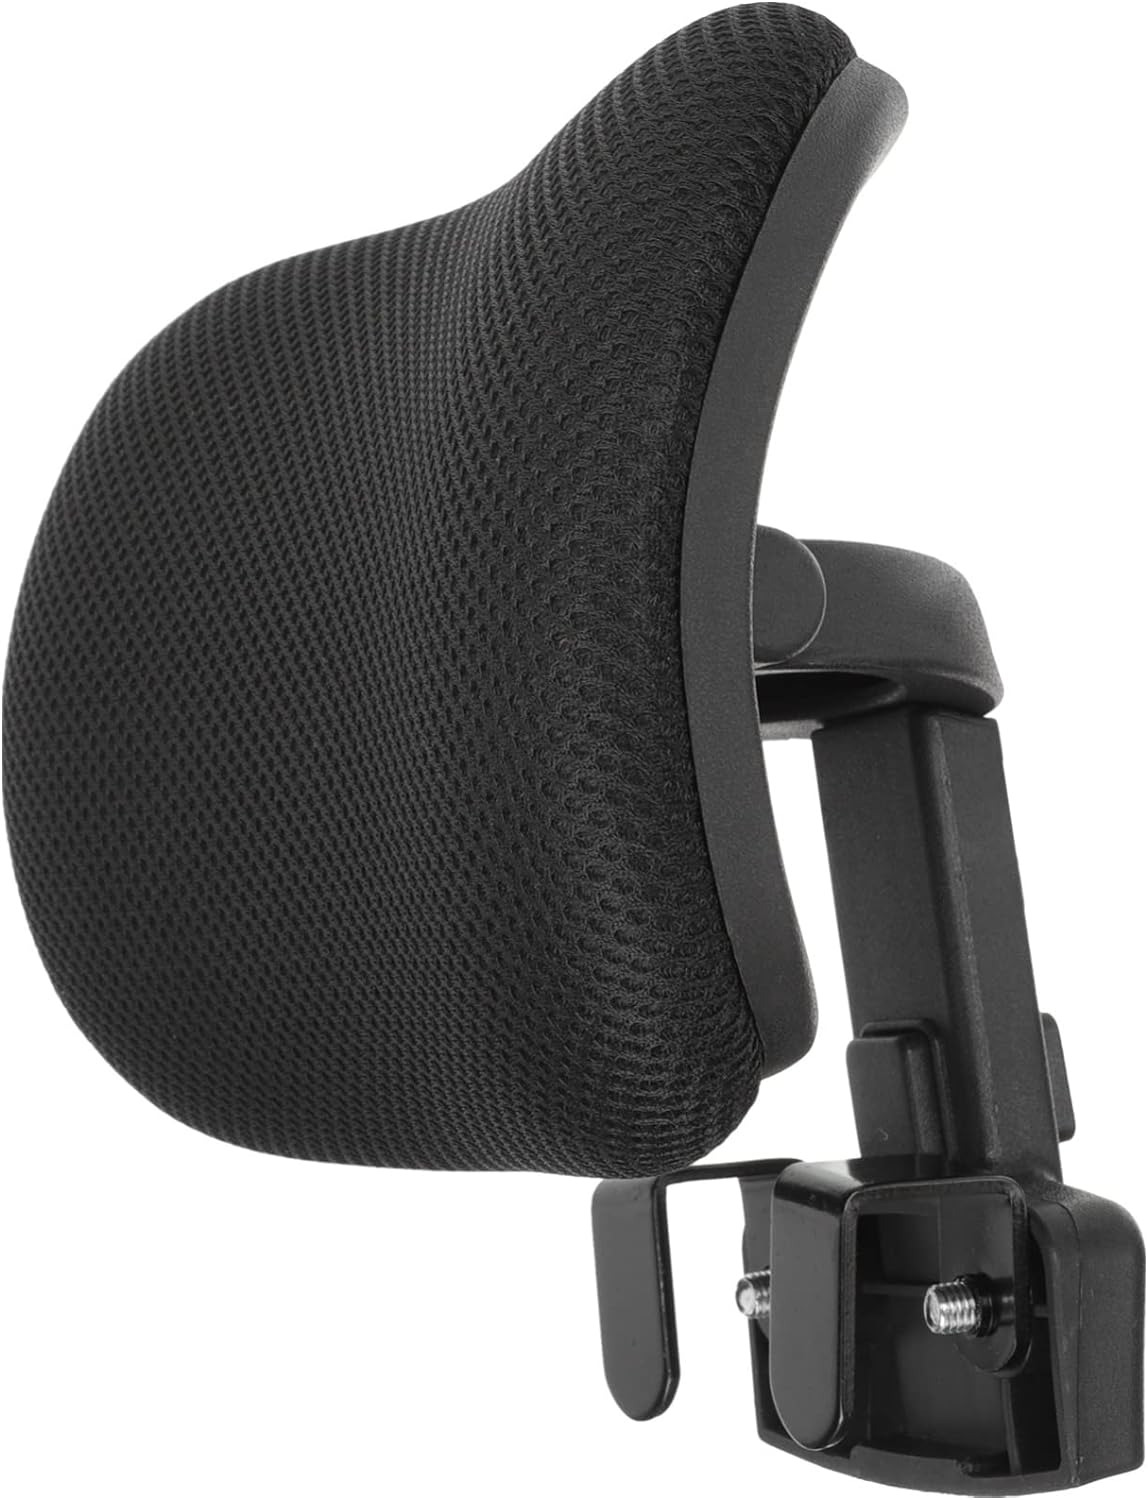 Adjustable Headrest Office Chair Headrest Computer Chair Head Cushion for Elasti